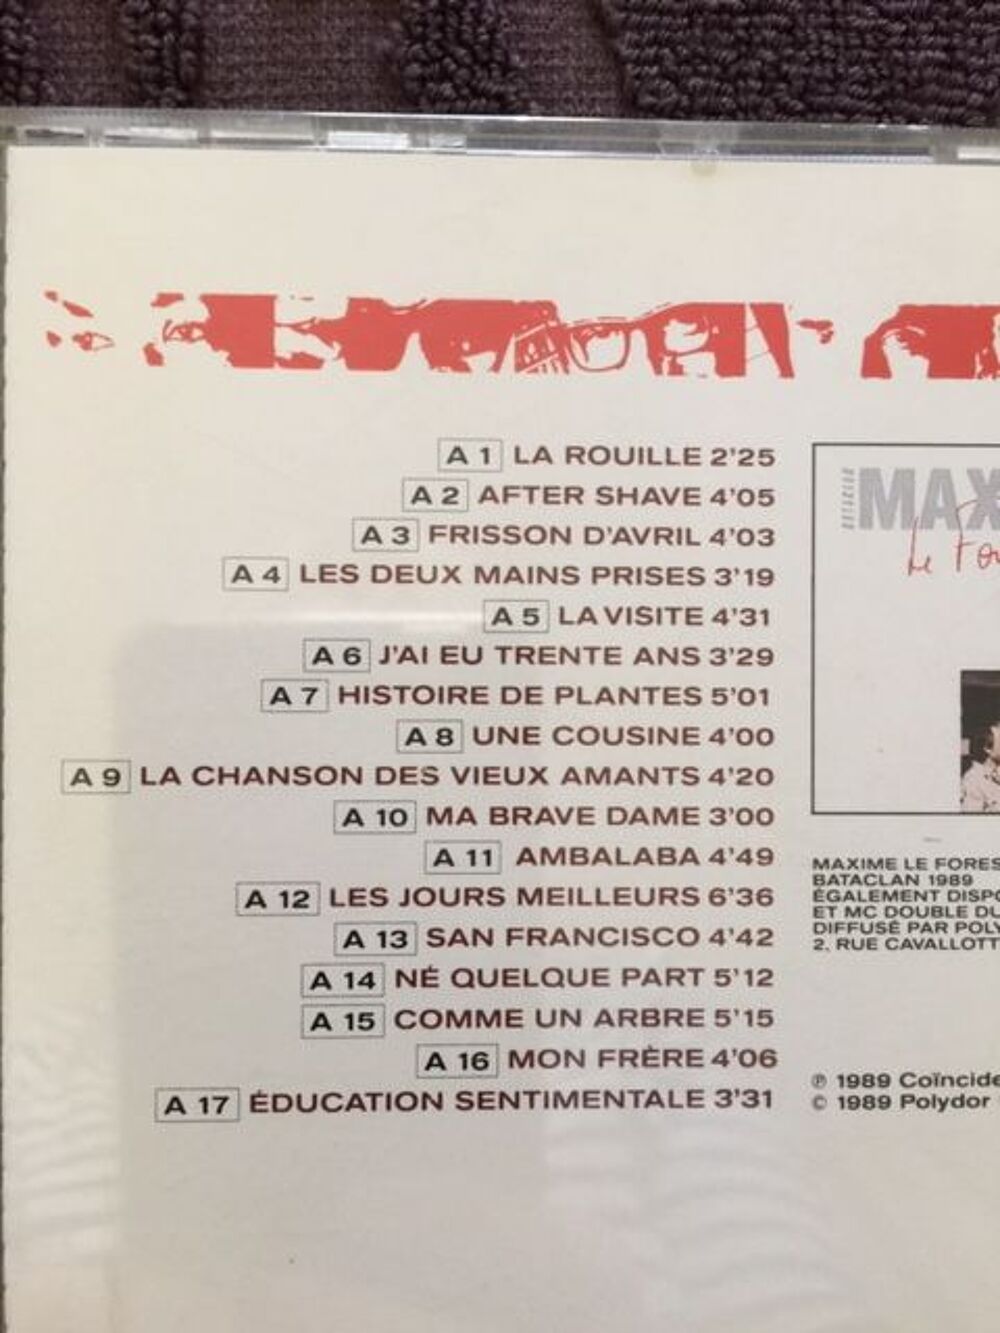 CD musique Maxime Le Forestier CD et vinyles